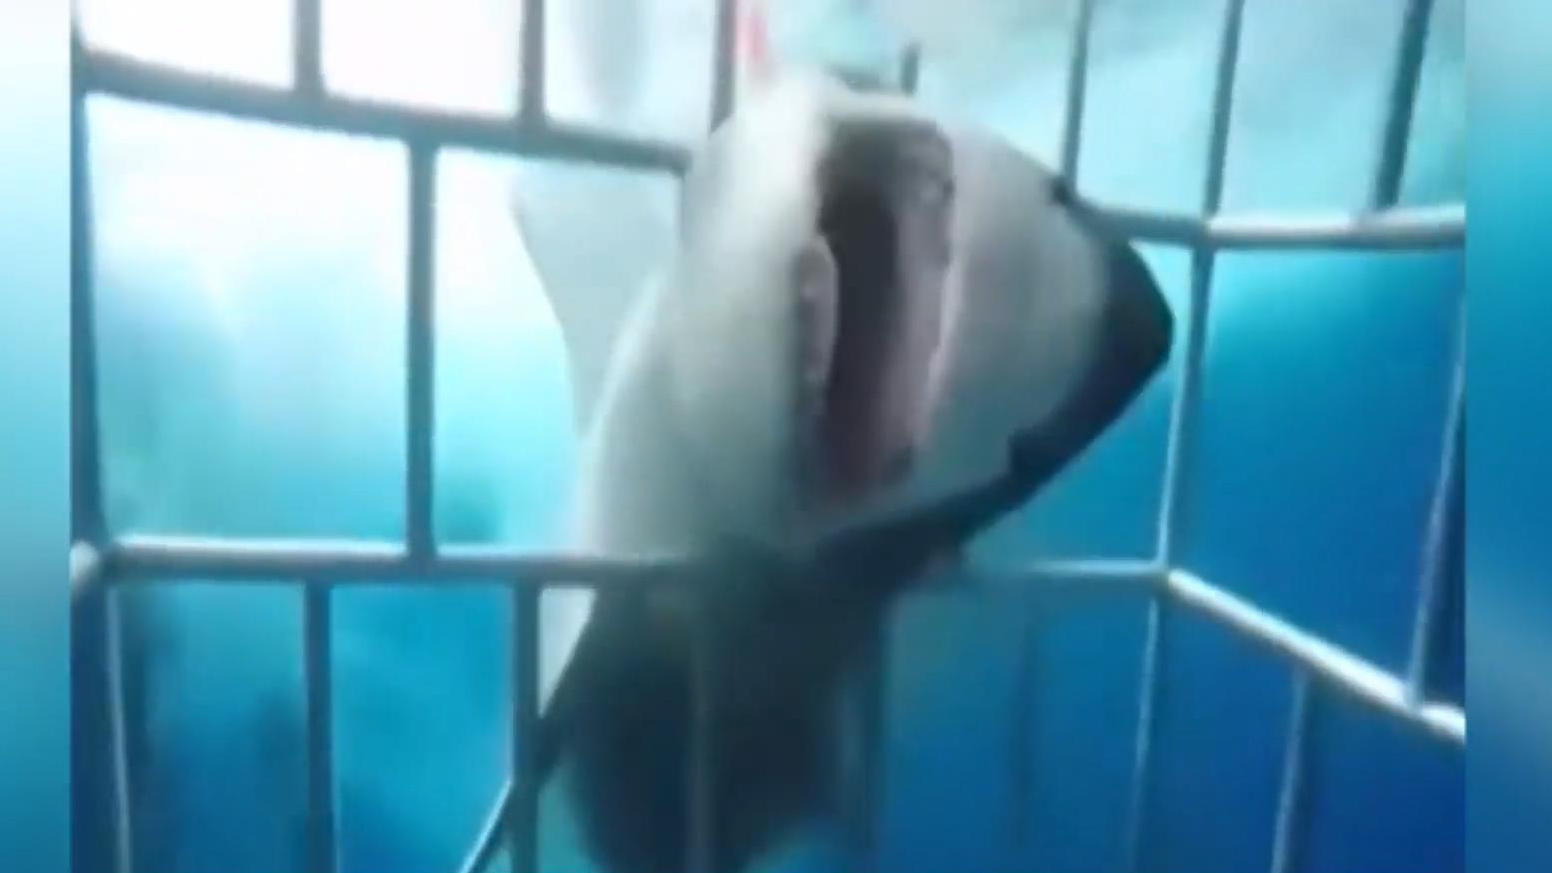 Weißer Hai greift Taucher an Schock-Video